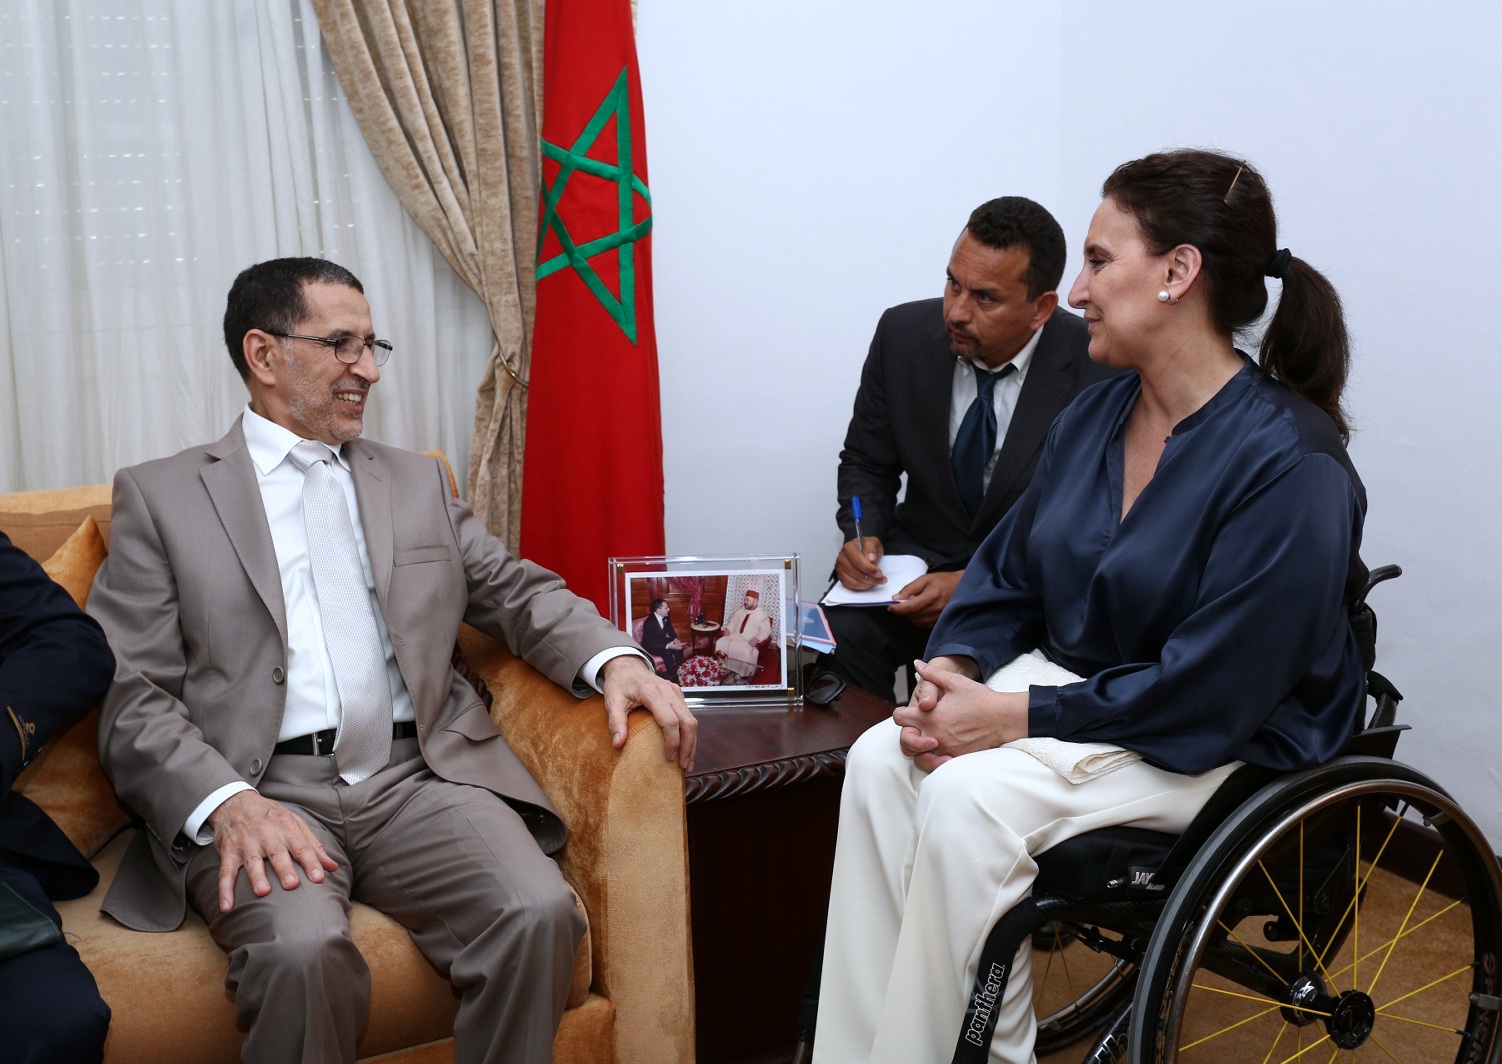 La Vicepresidente, en misión oficial en Marruecos y Egipto